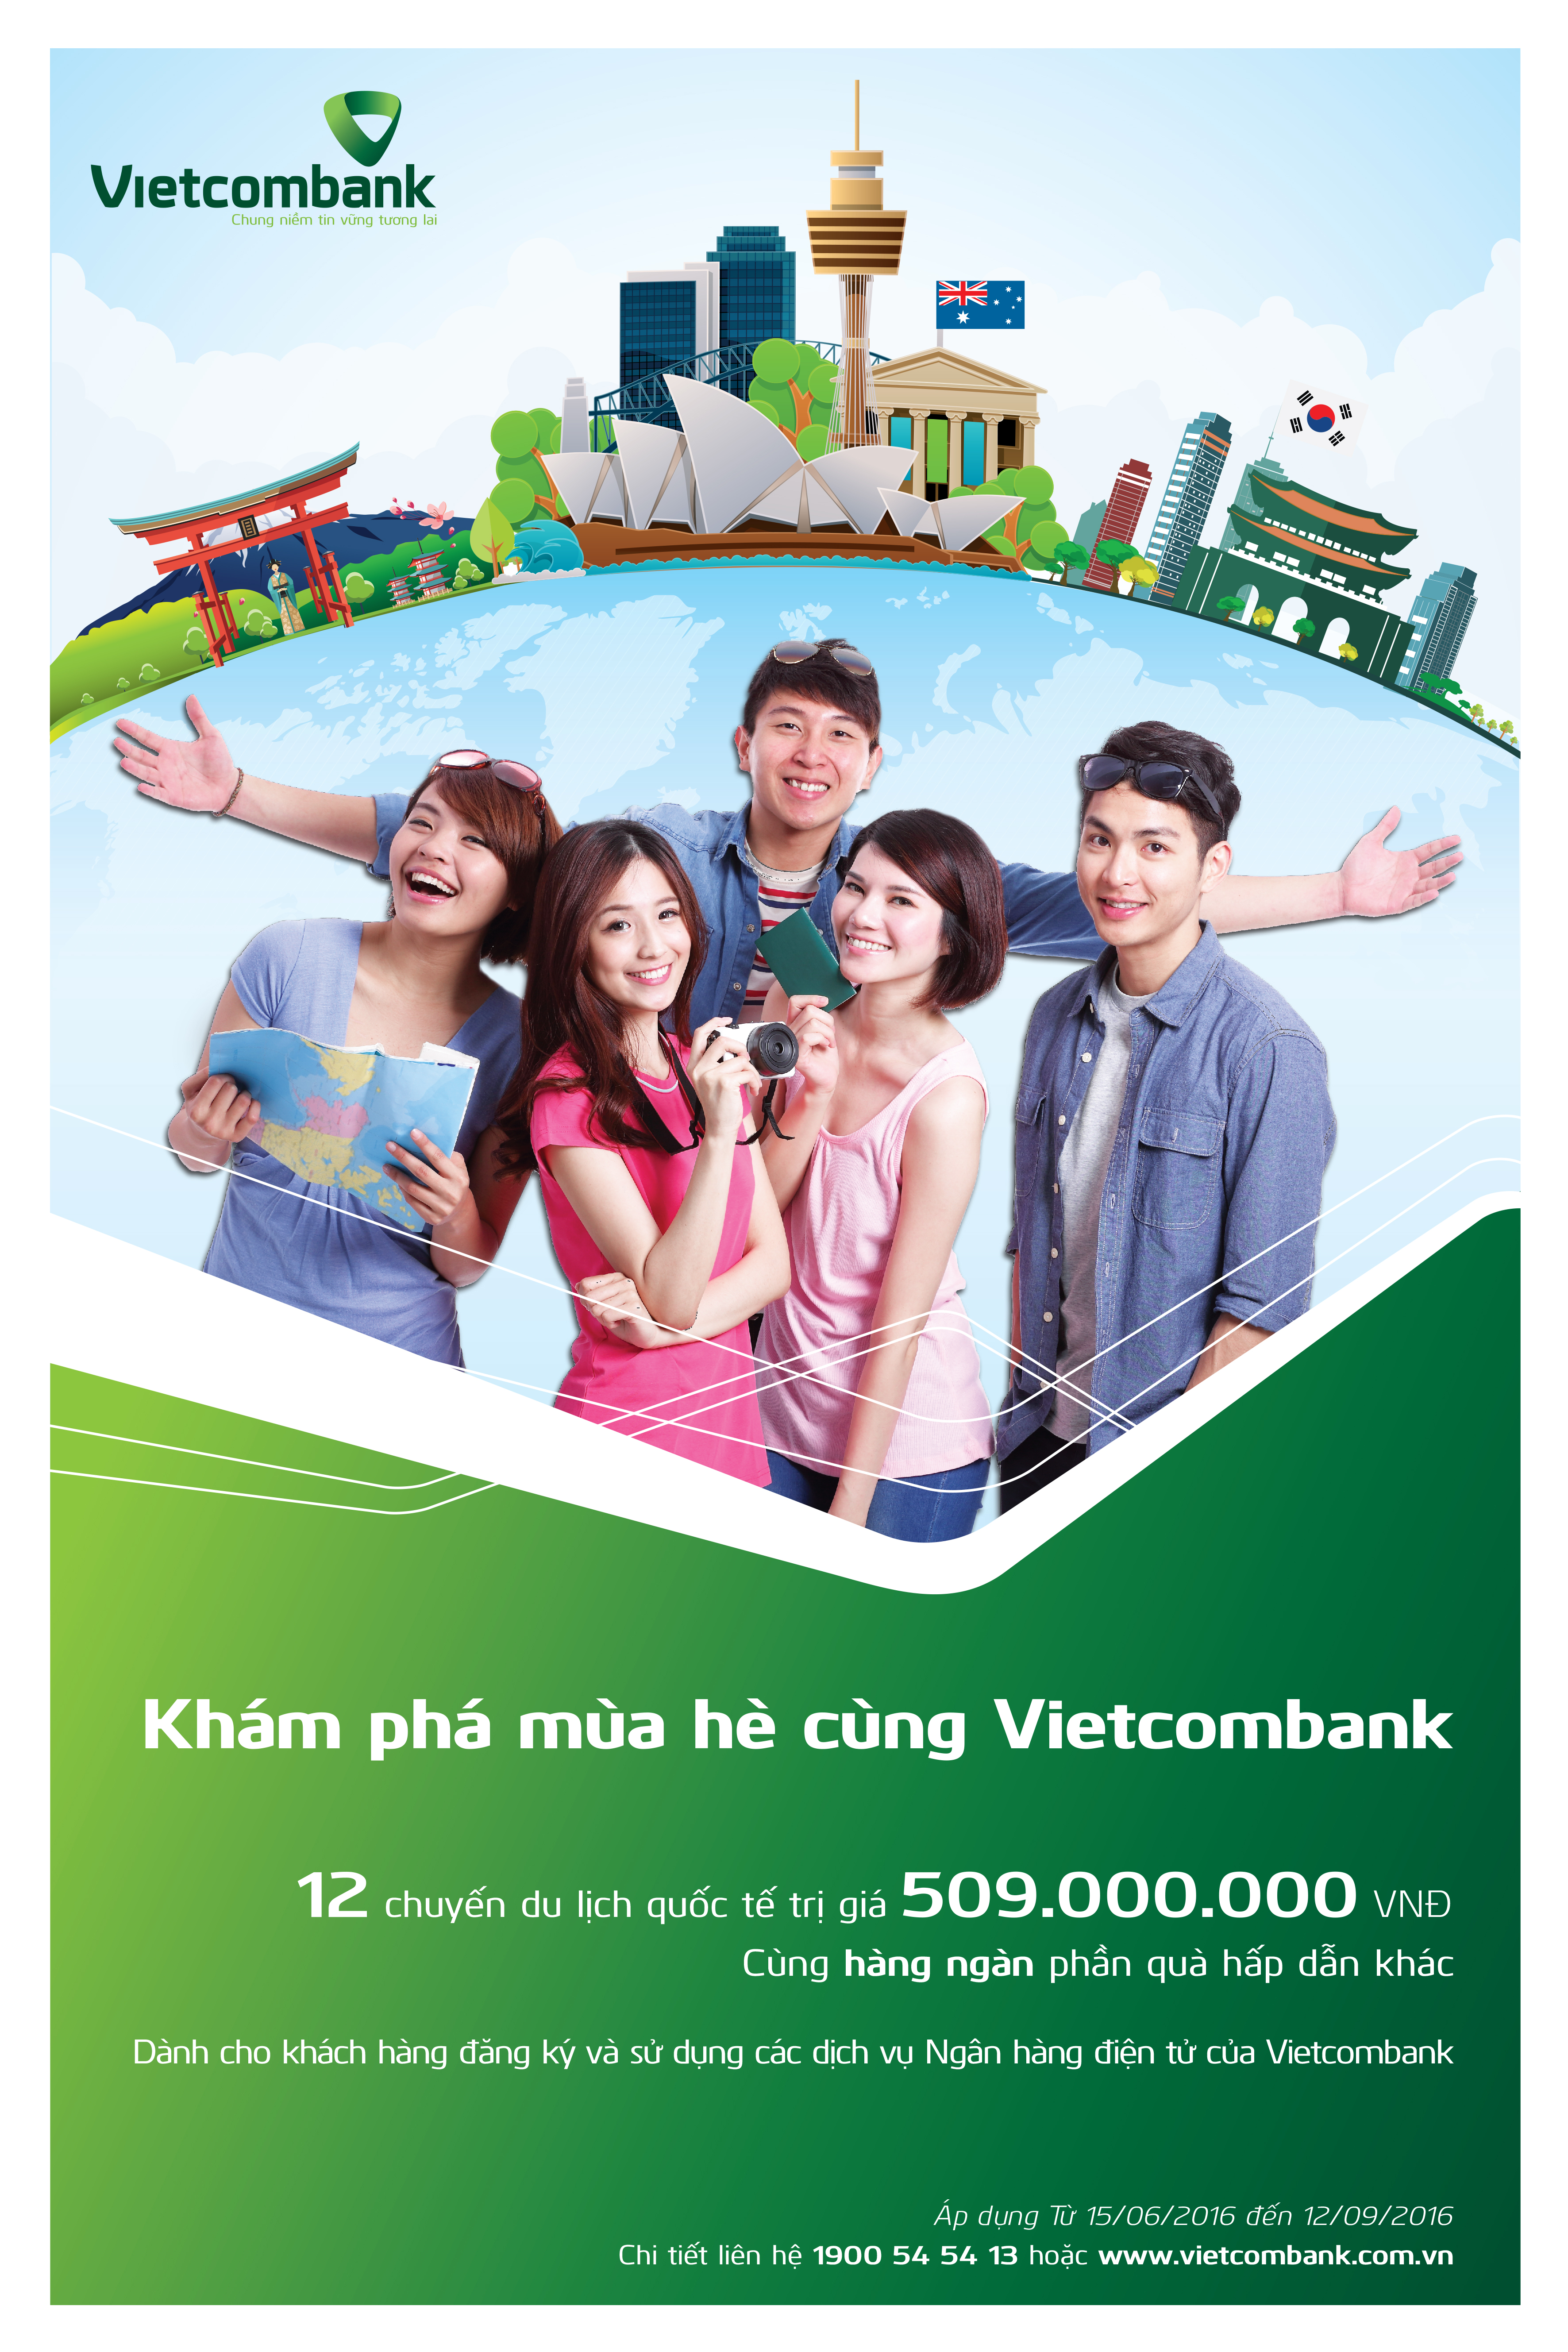 Thông báo khách hàng trúng thưởng Chương trình khuyến mại “Khám phá mùa hè cùng Vietcombank” Đợt 2